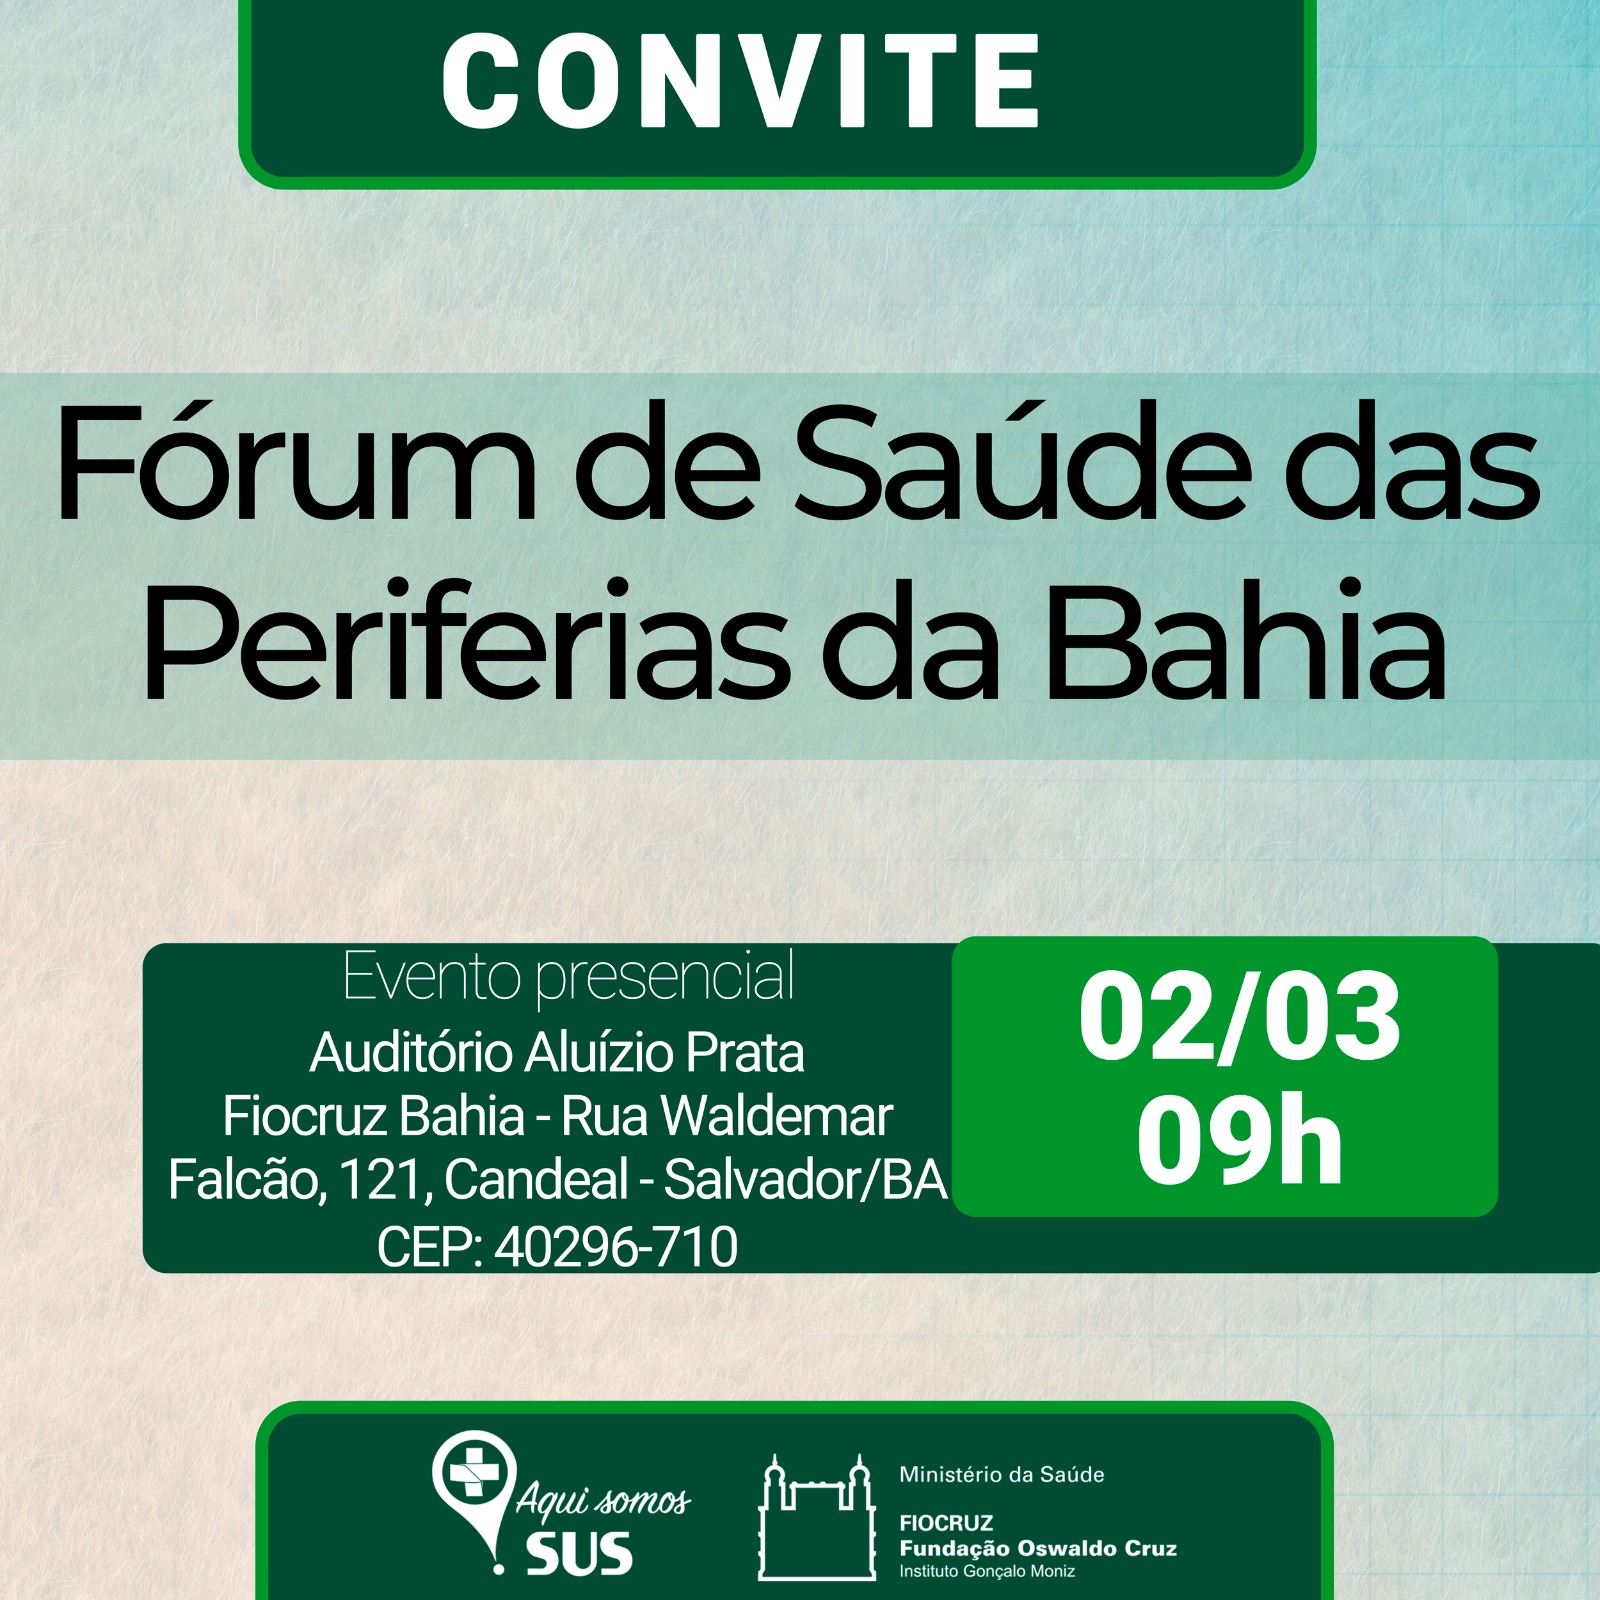 Fórum de Saúde das Periferias da Bahia realiza encontro na FioCruz Bahia